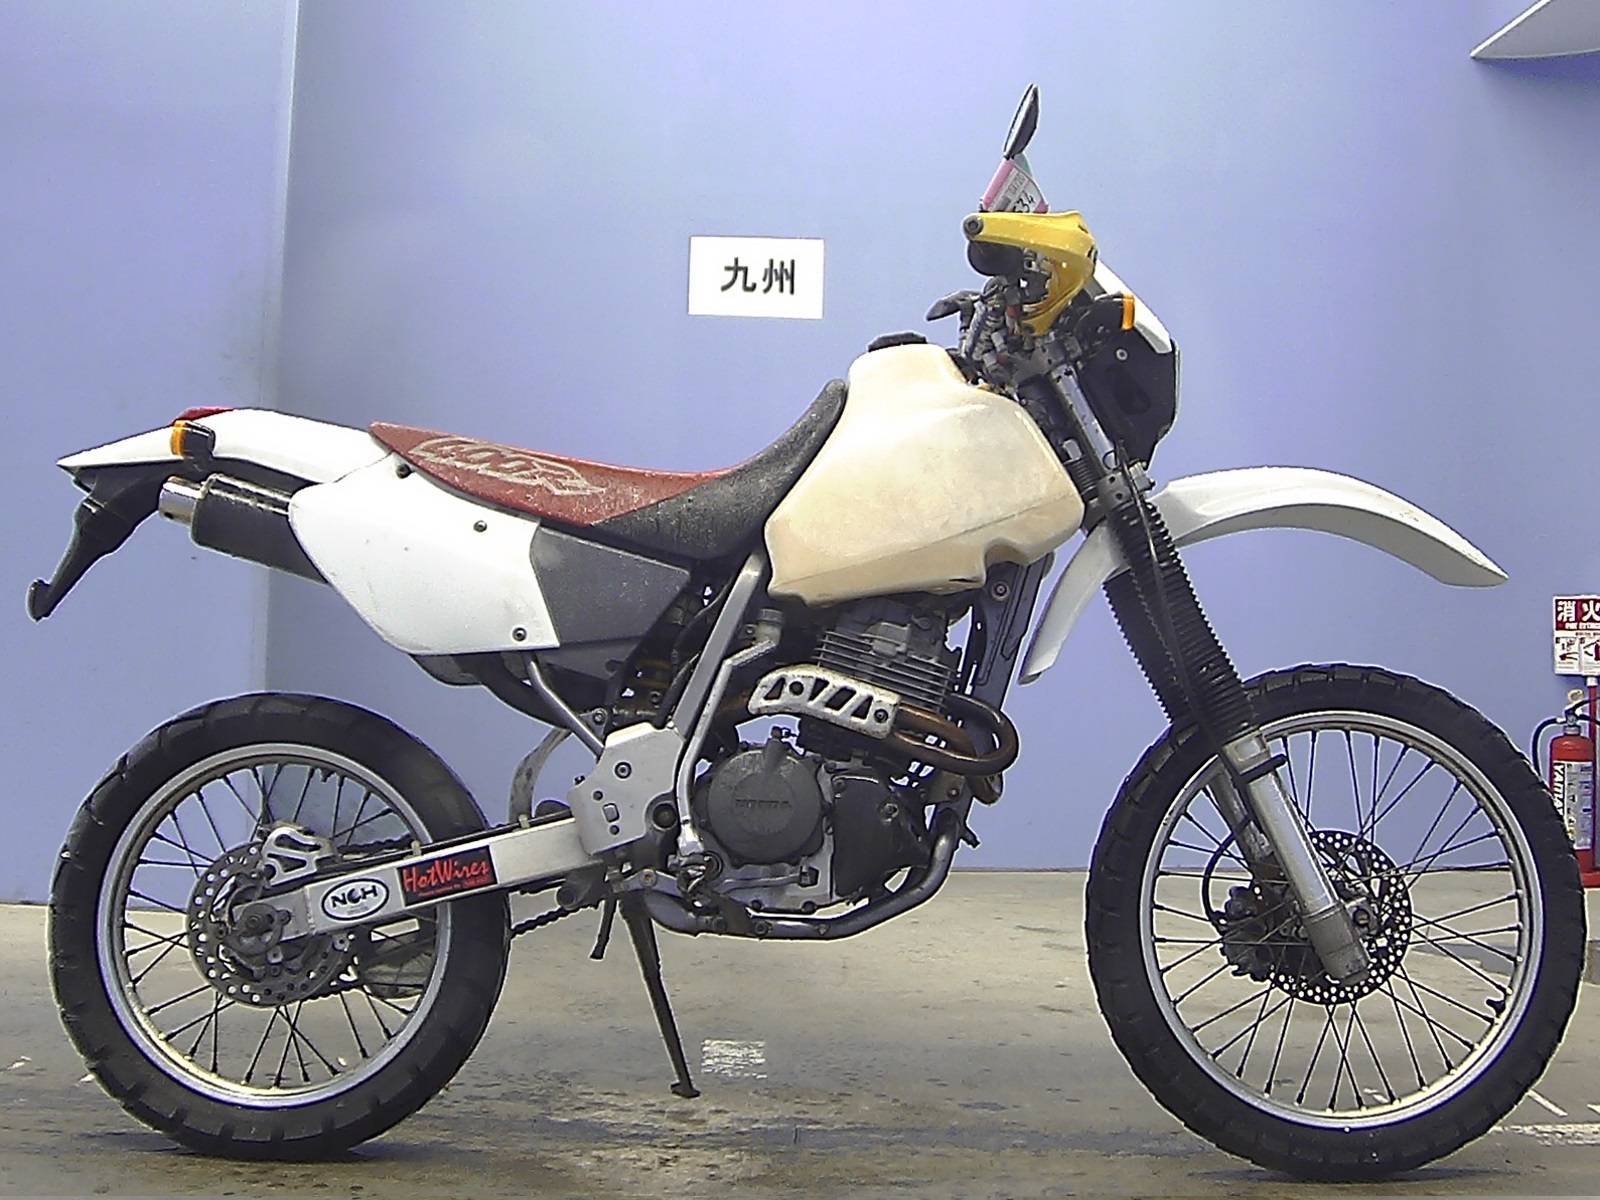 Мотоцикл xr400r (1996): технические характеристики, фото, видео